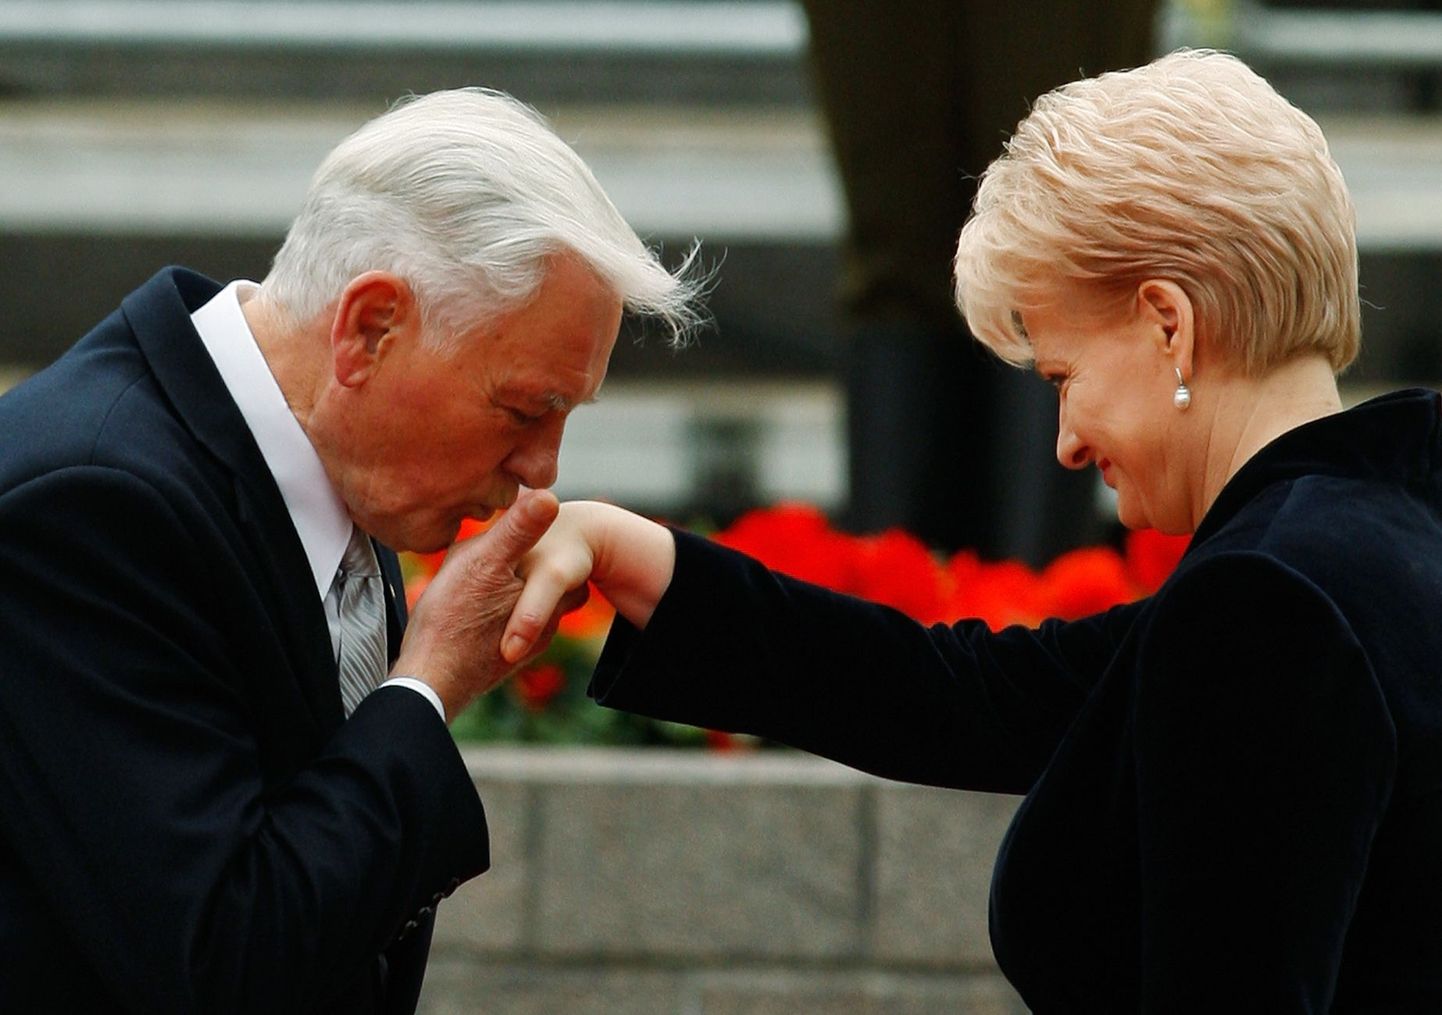 Leedu eelmine president Valdas Adamkus suudleb praeguse riigipea Dalia Grybauskaite kätt.